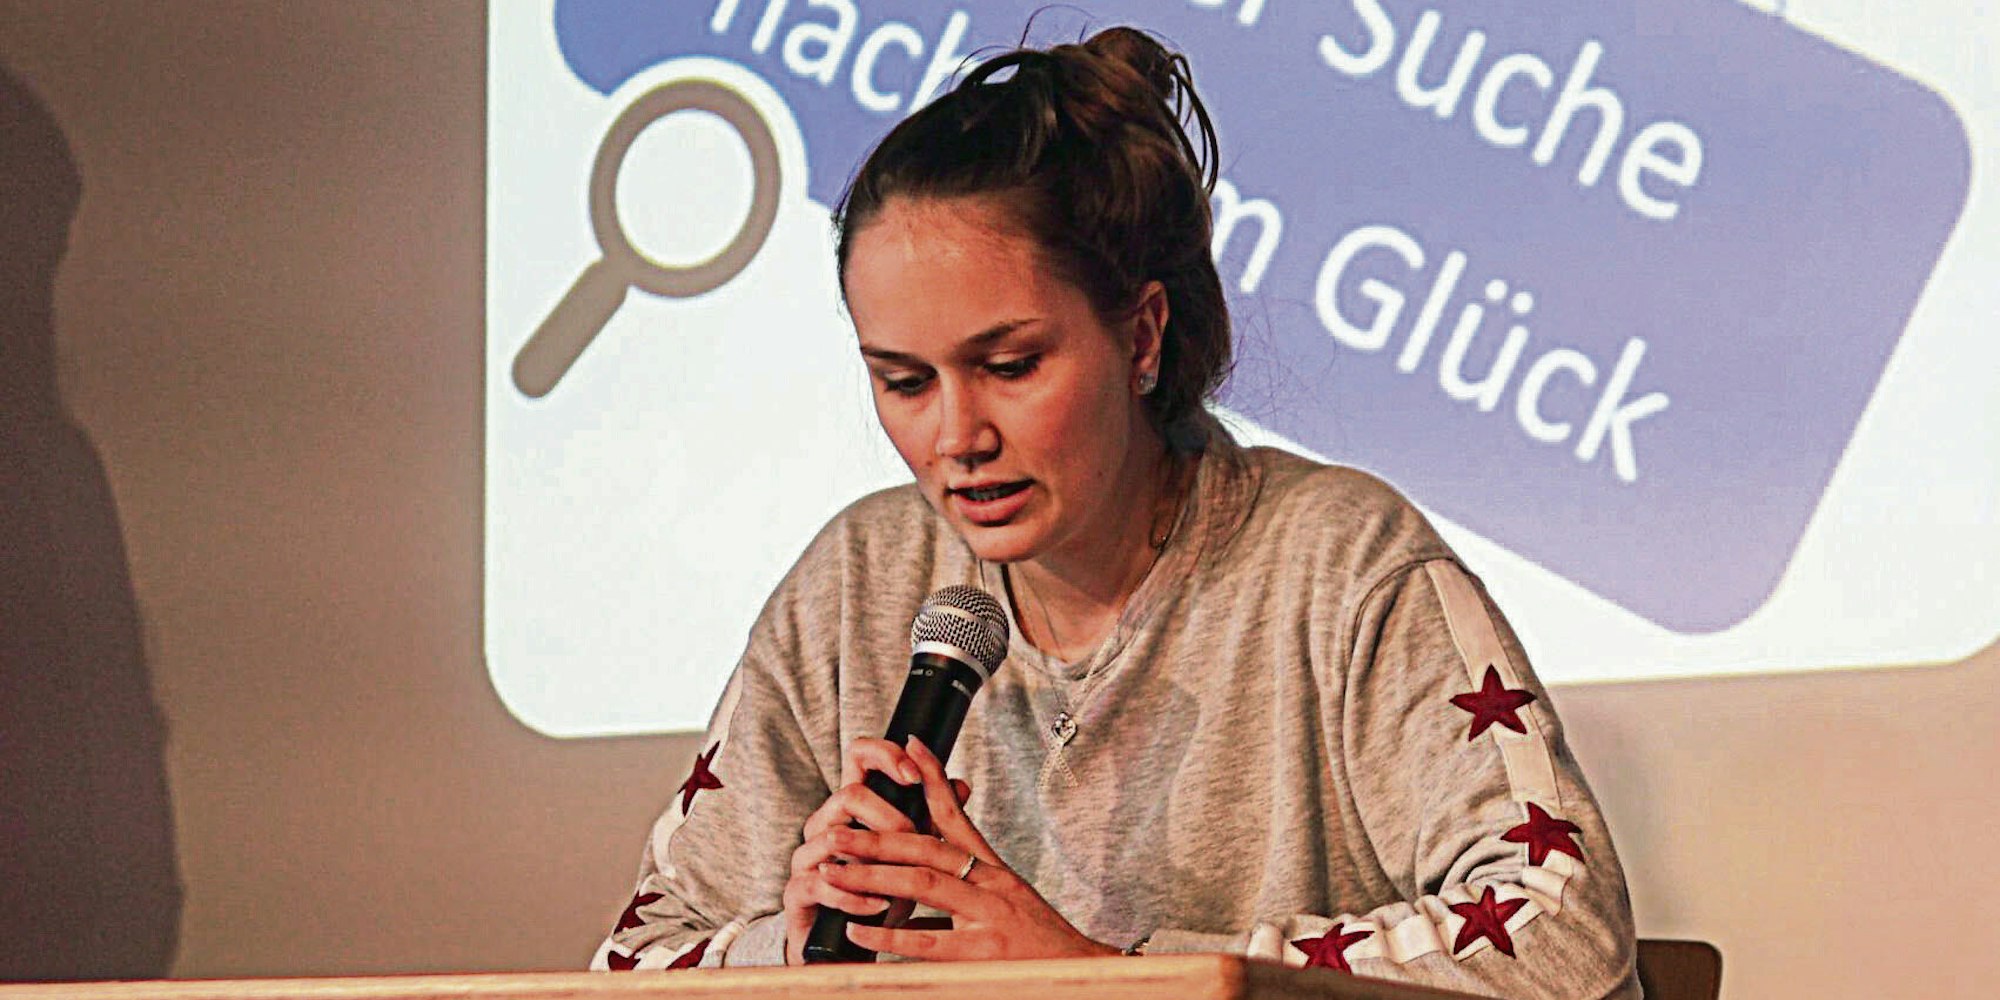 Zoe Schiebur war eine der Teilnehmerinnen des Schreibwettbewerbs.